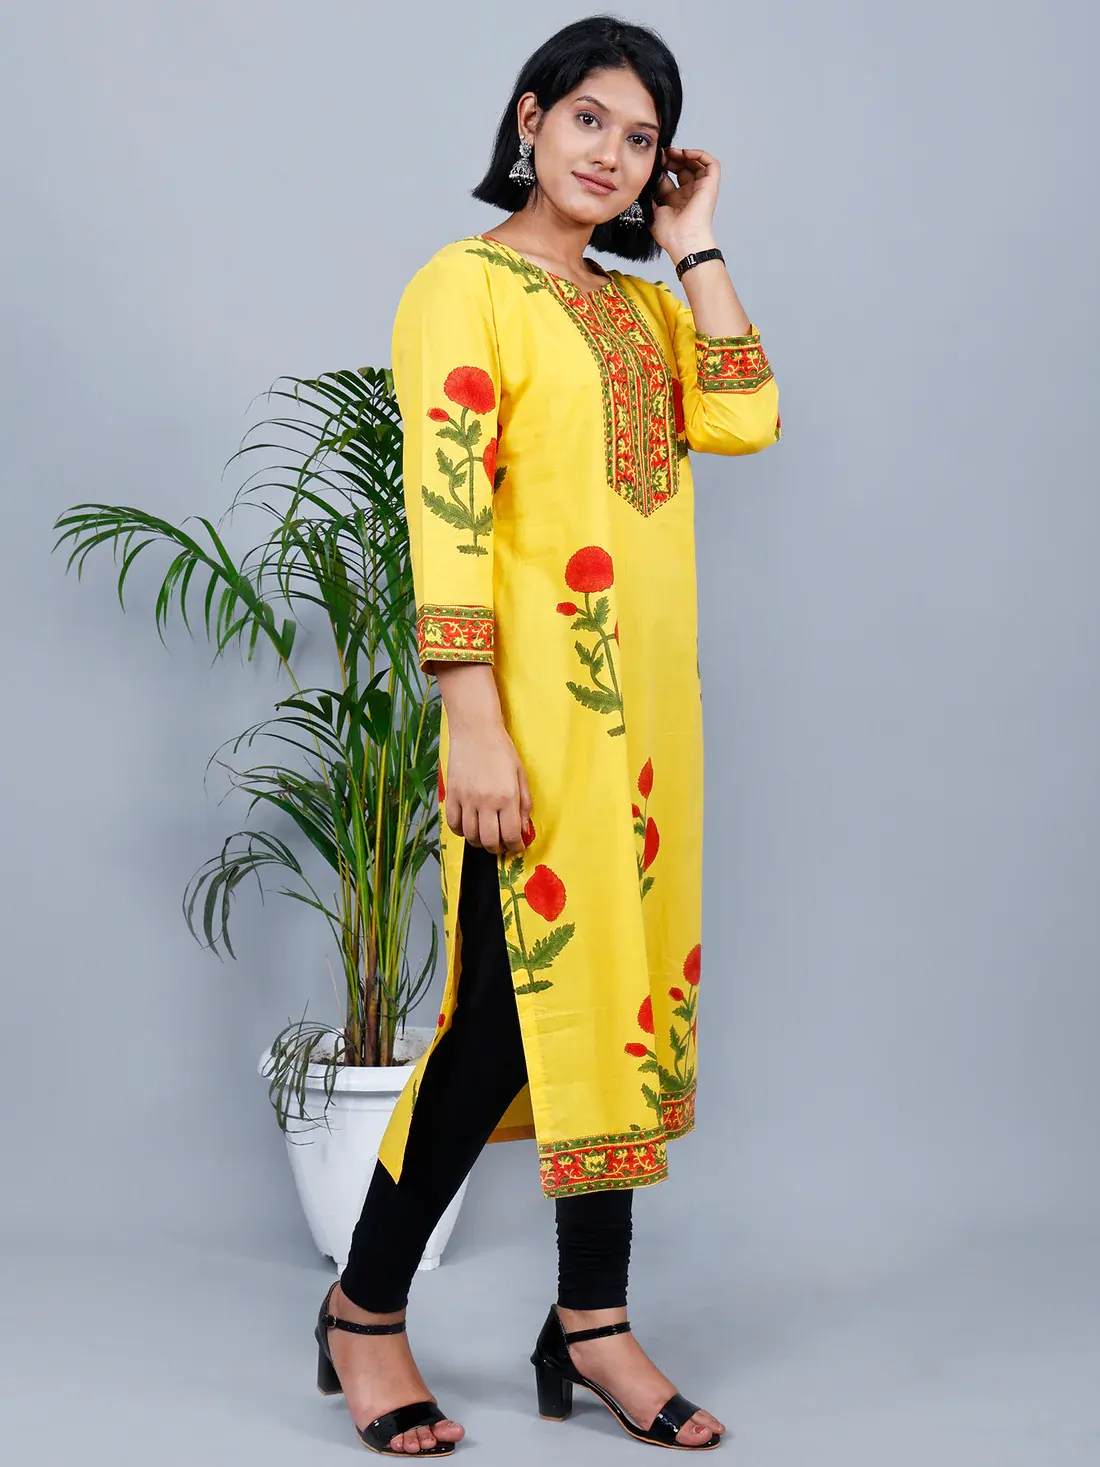 בגדי קיץ אתניים הודיים פקיסטניים אופנתיים חדשים בעיצוב אחרון בלוק צהוב מודפס קורטה בייצור סיטונאי